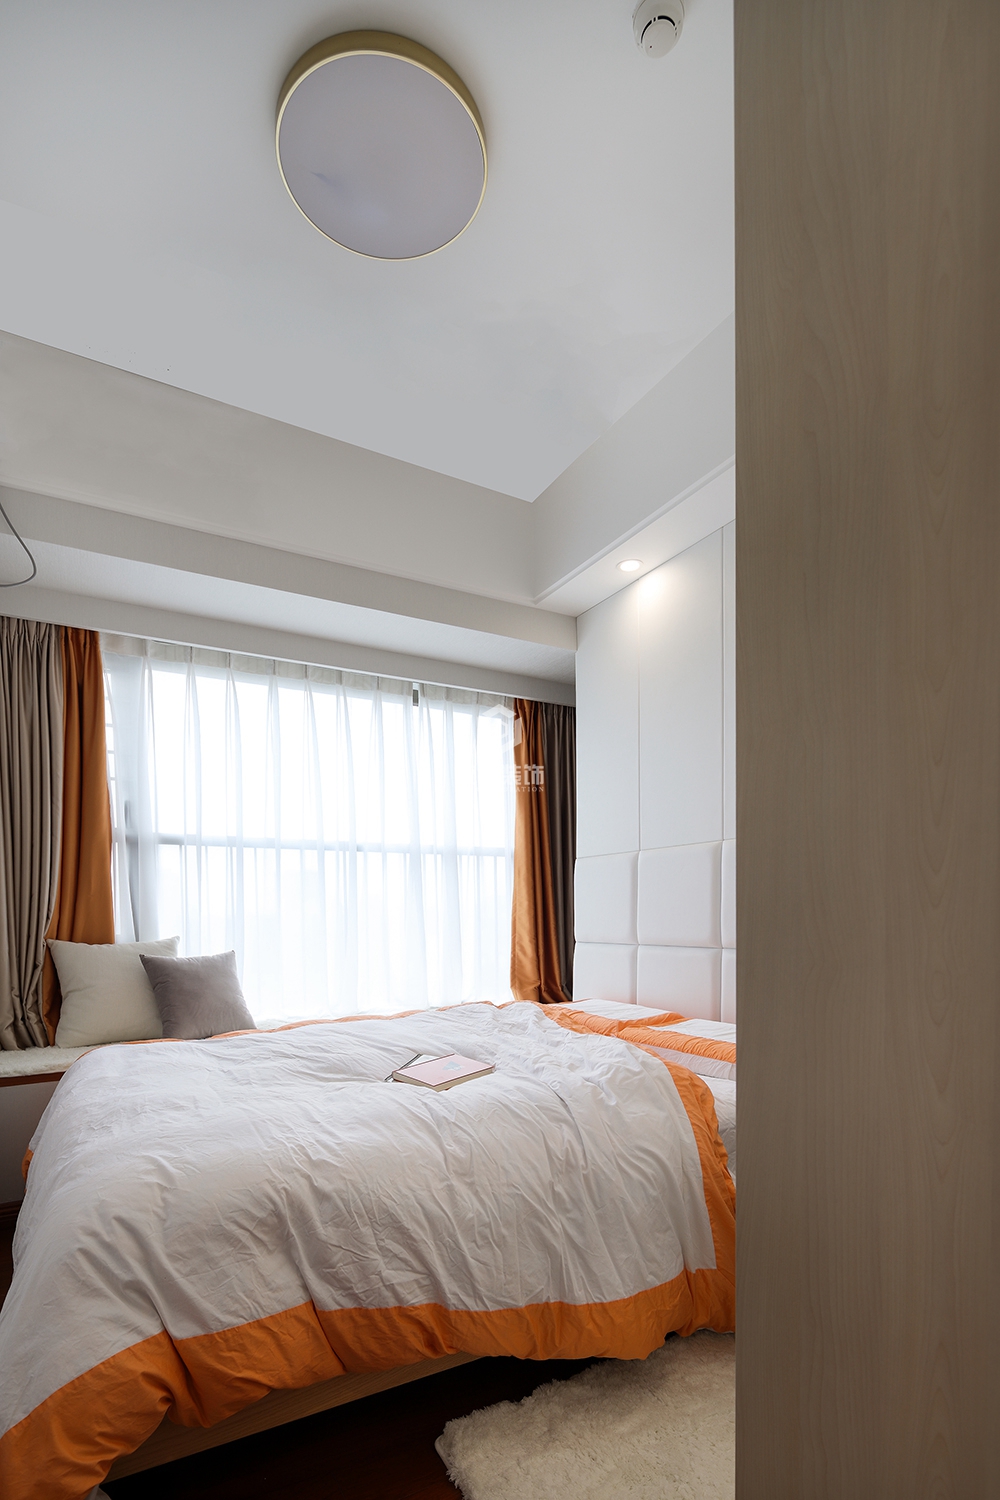 浦东新区天河尚海100平方现代简约风格三房两厅卧室装修效果图